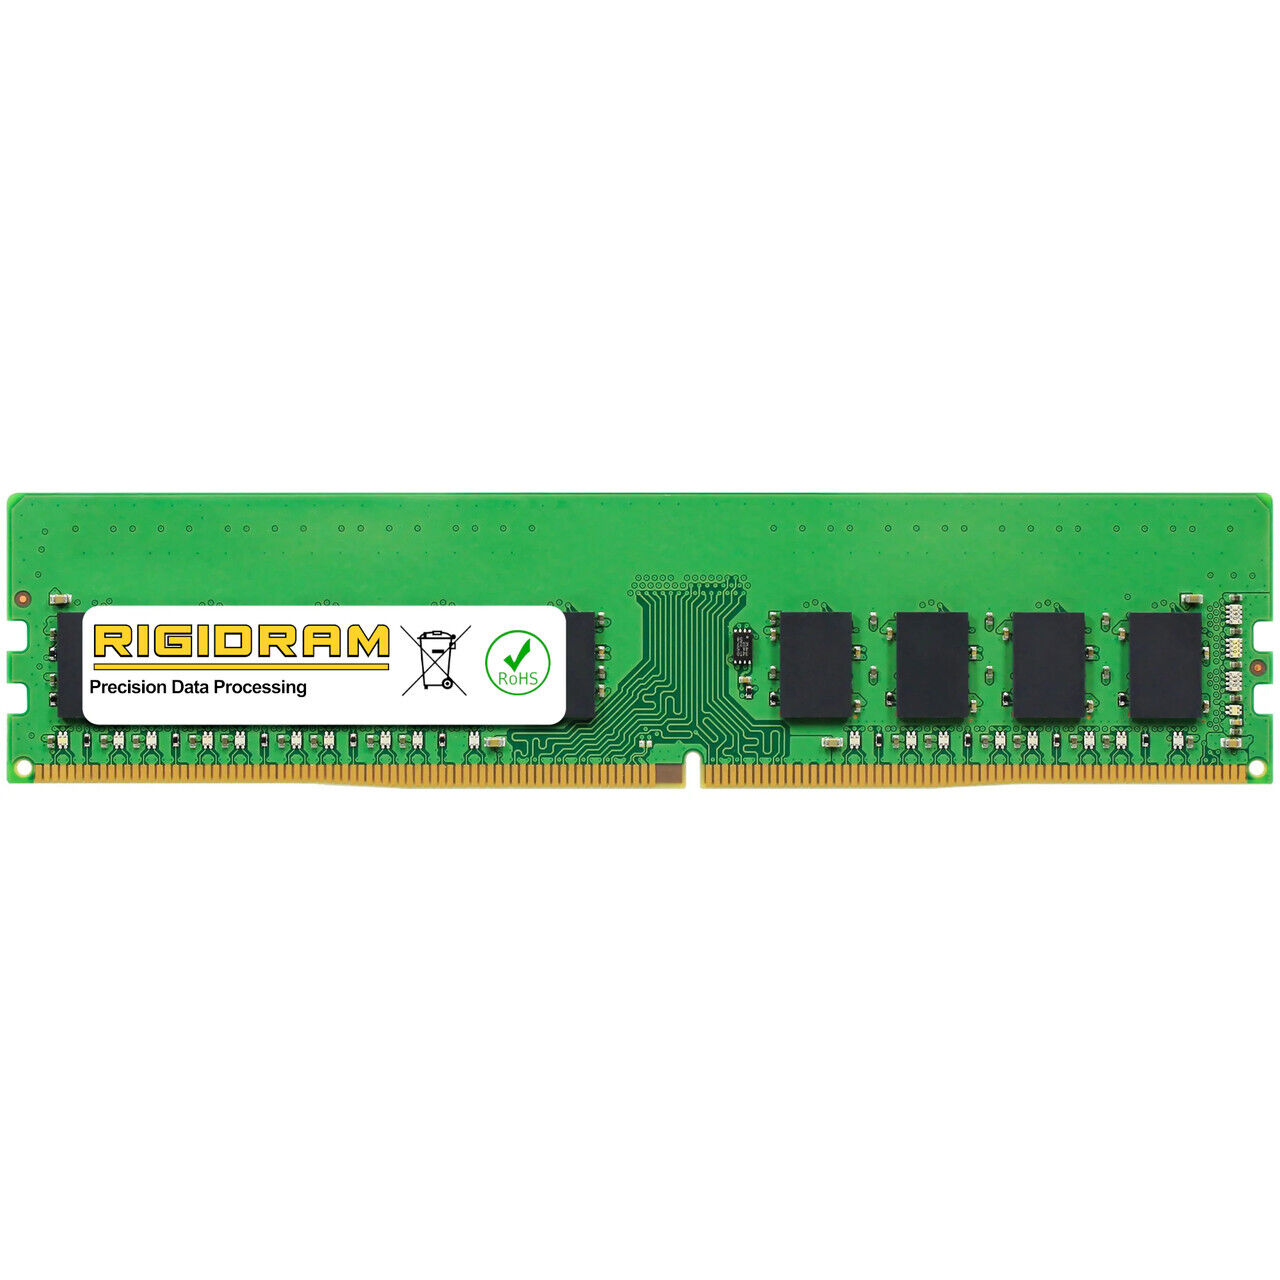 8GB R8GDR4ECT0-UD-2666 DDR4-2666MHz RigidRAM UDIMM ECC Memory for Qnap